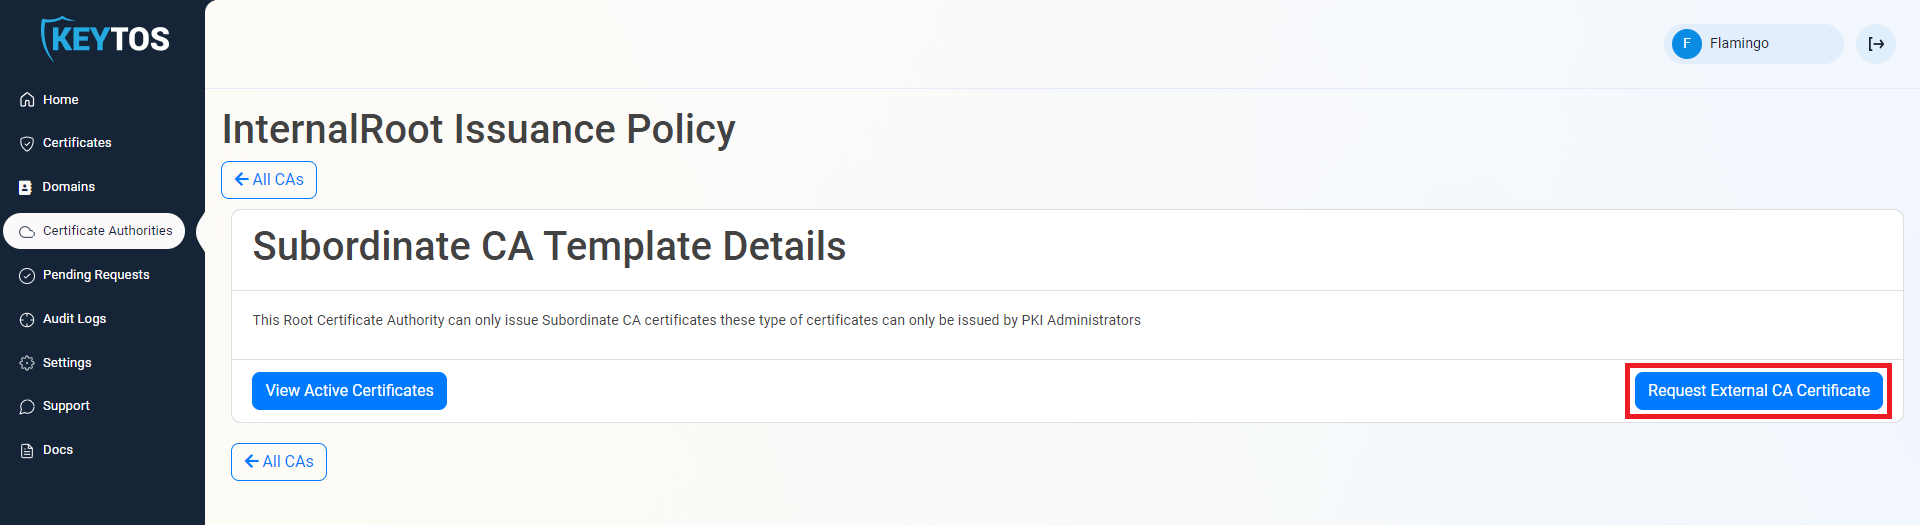 EZCA Request External CA Certificate